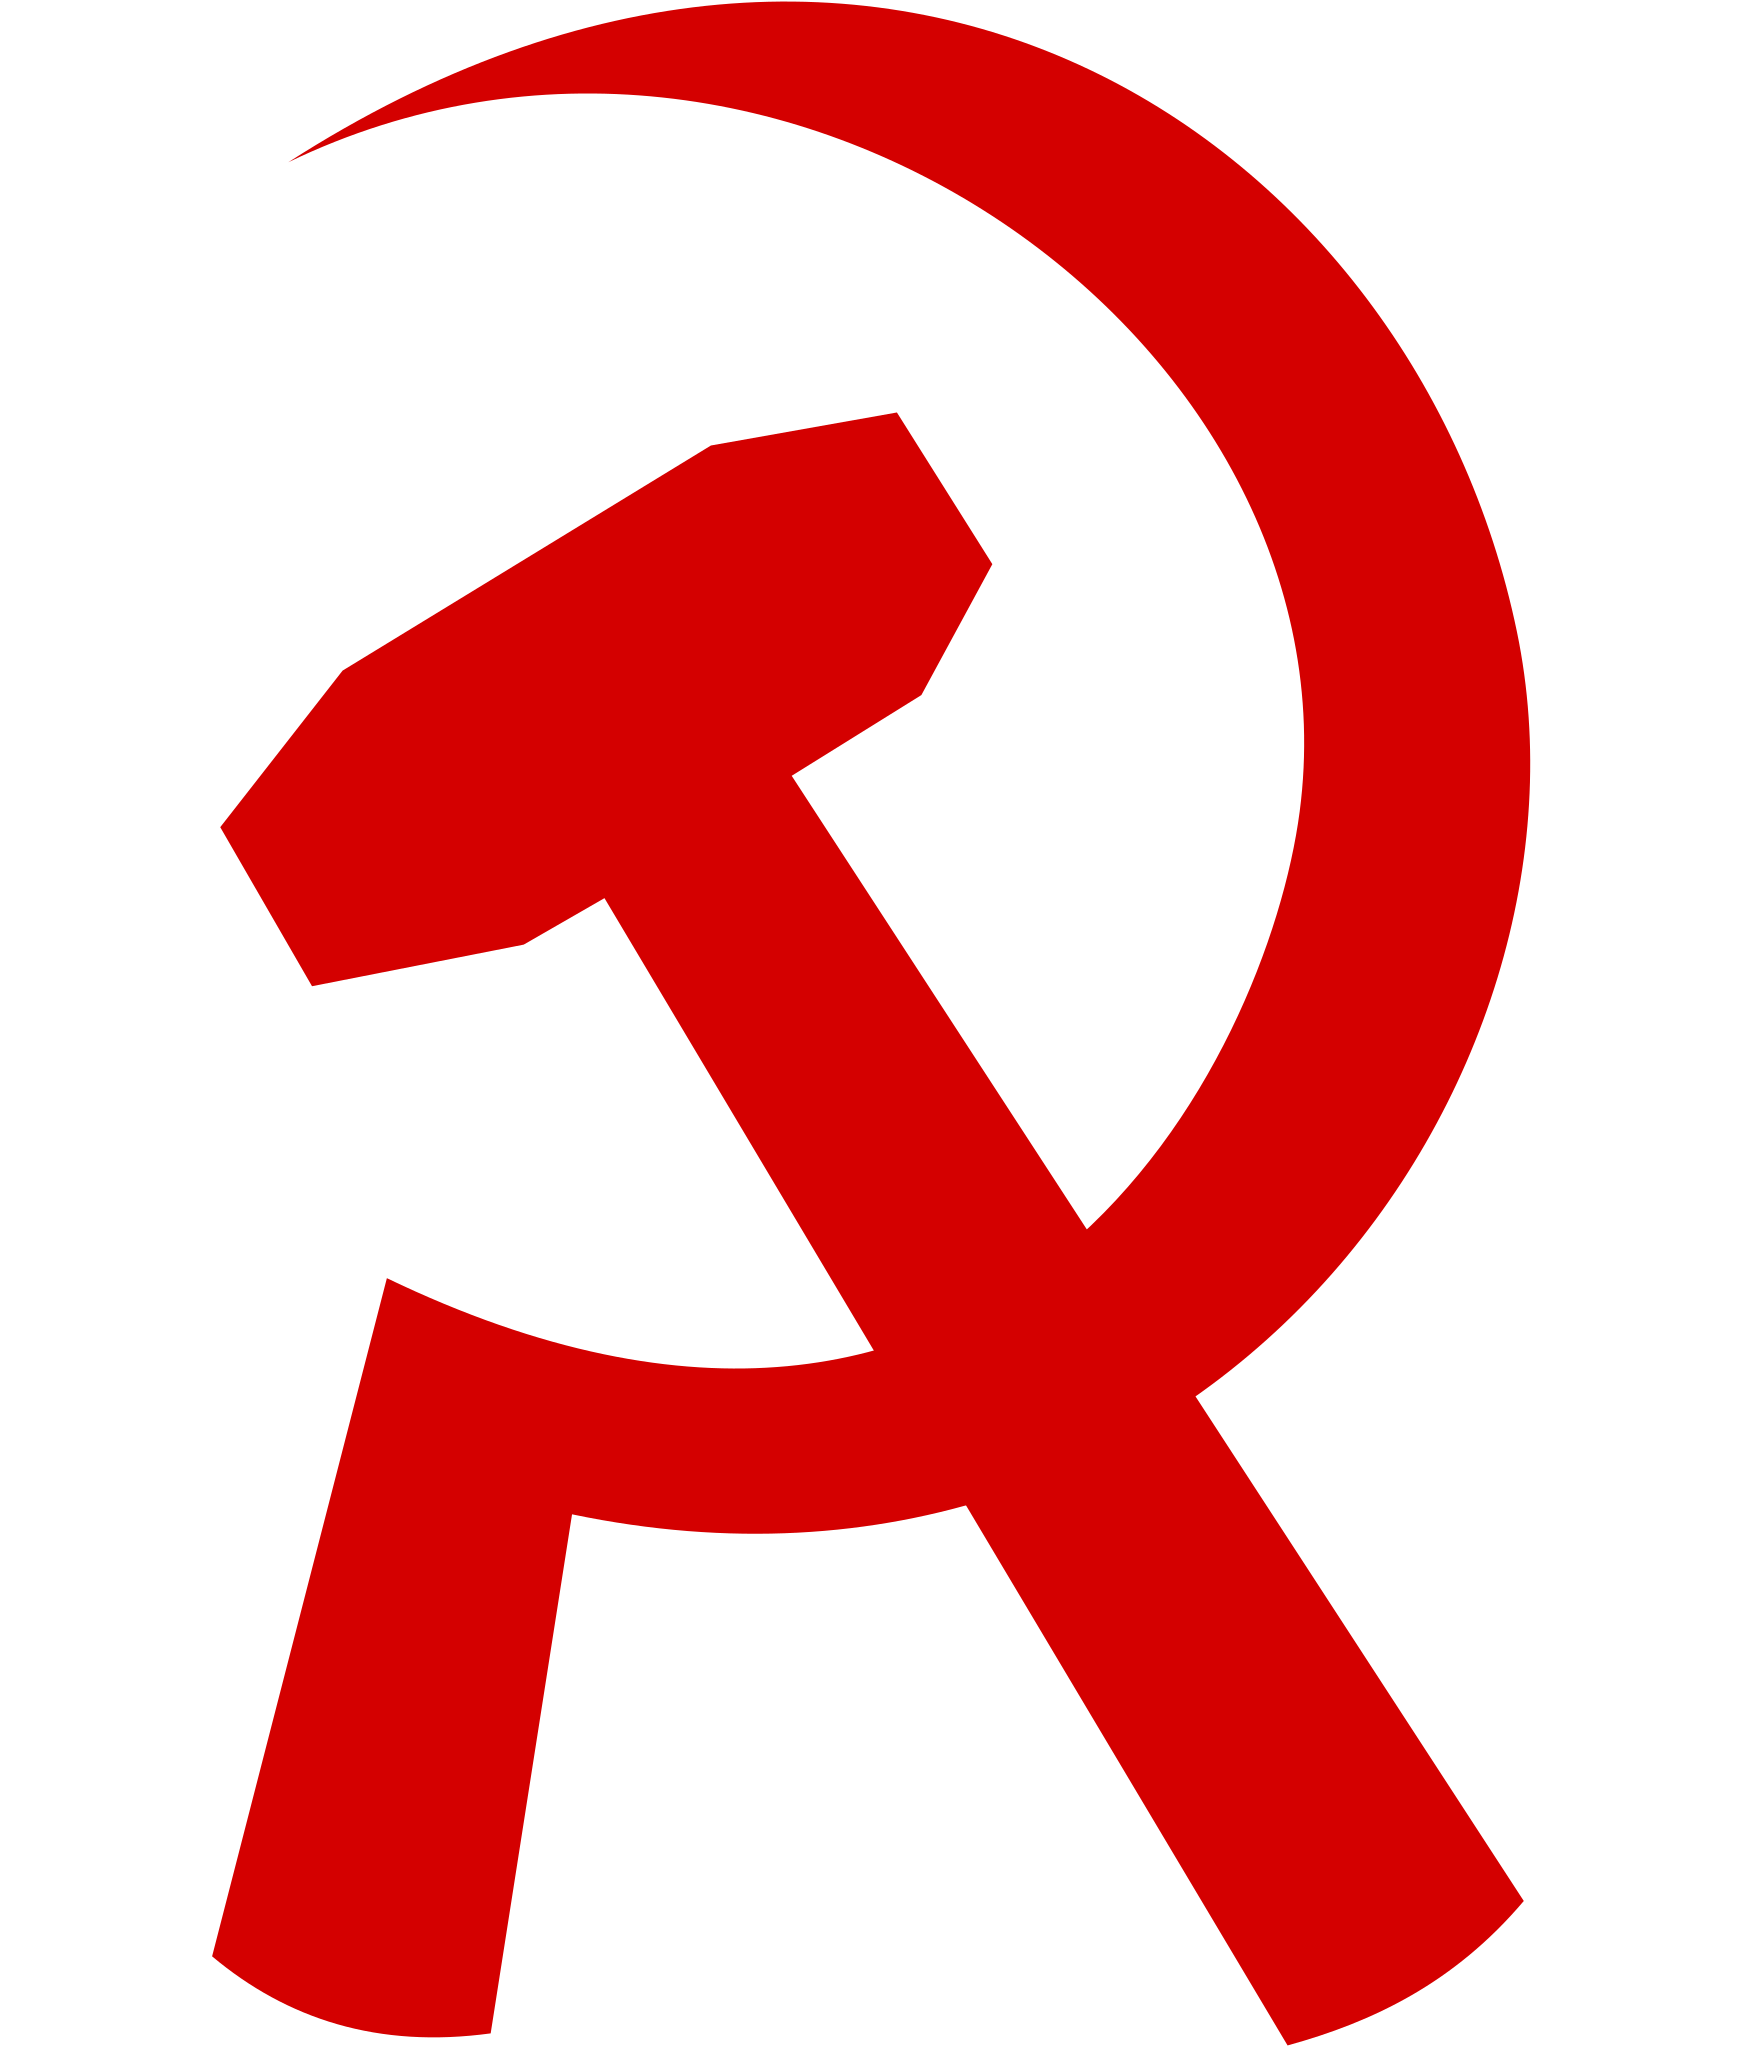 www.socialist.net